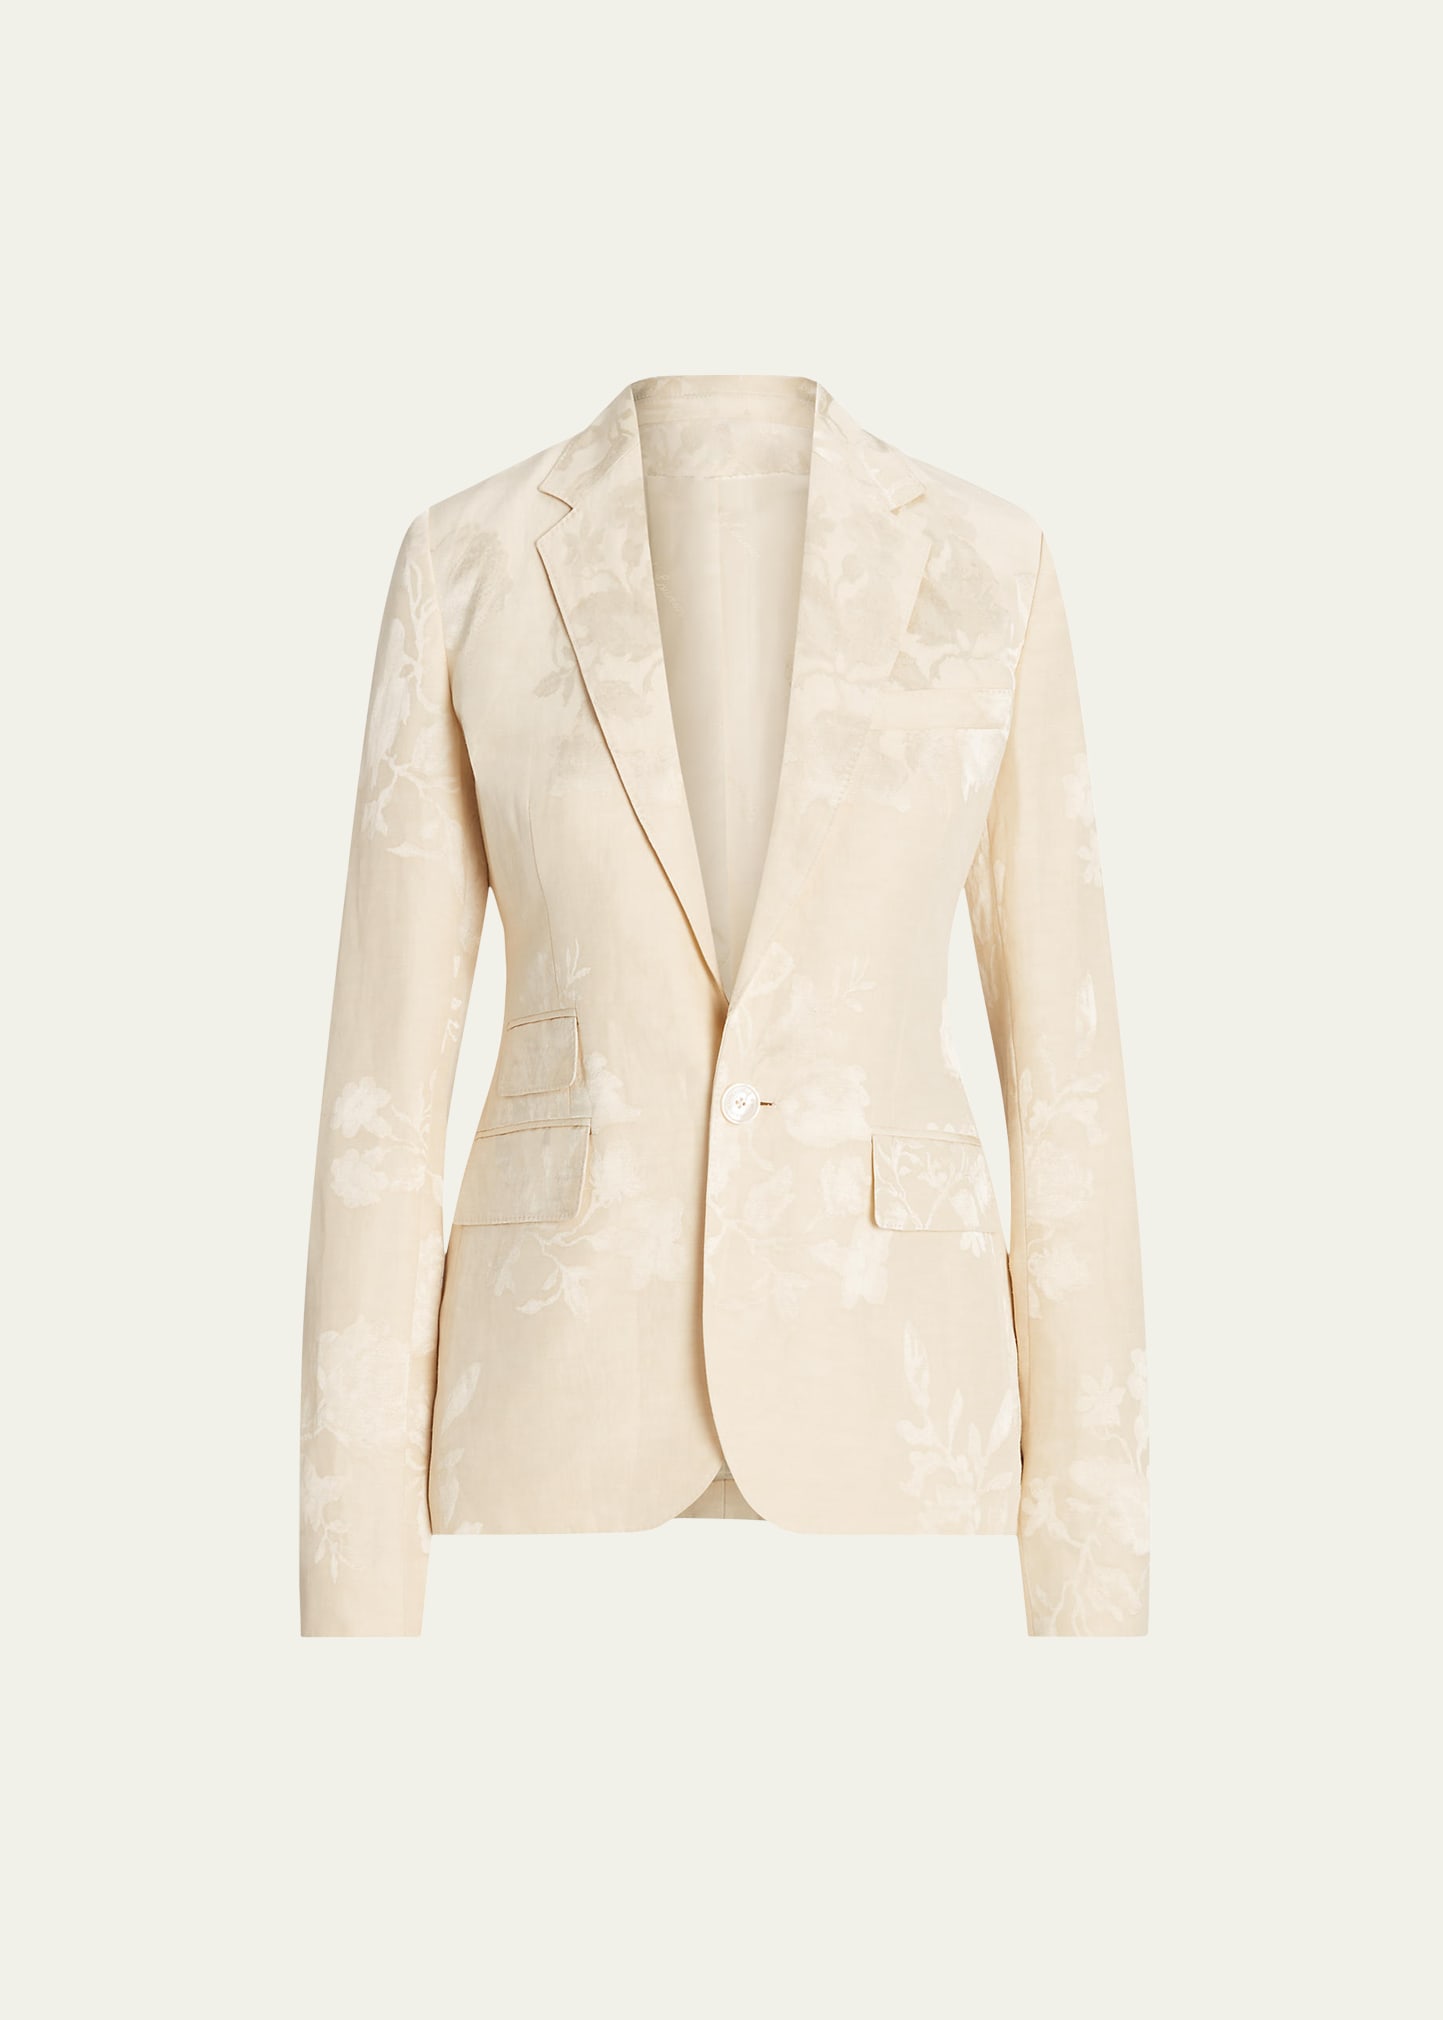 Parker Floral Jacquard Single-Breasted Blazer Jacket